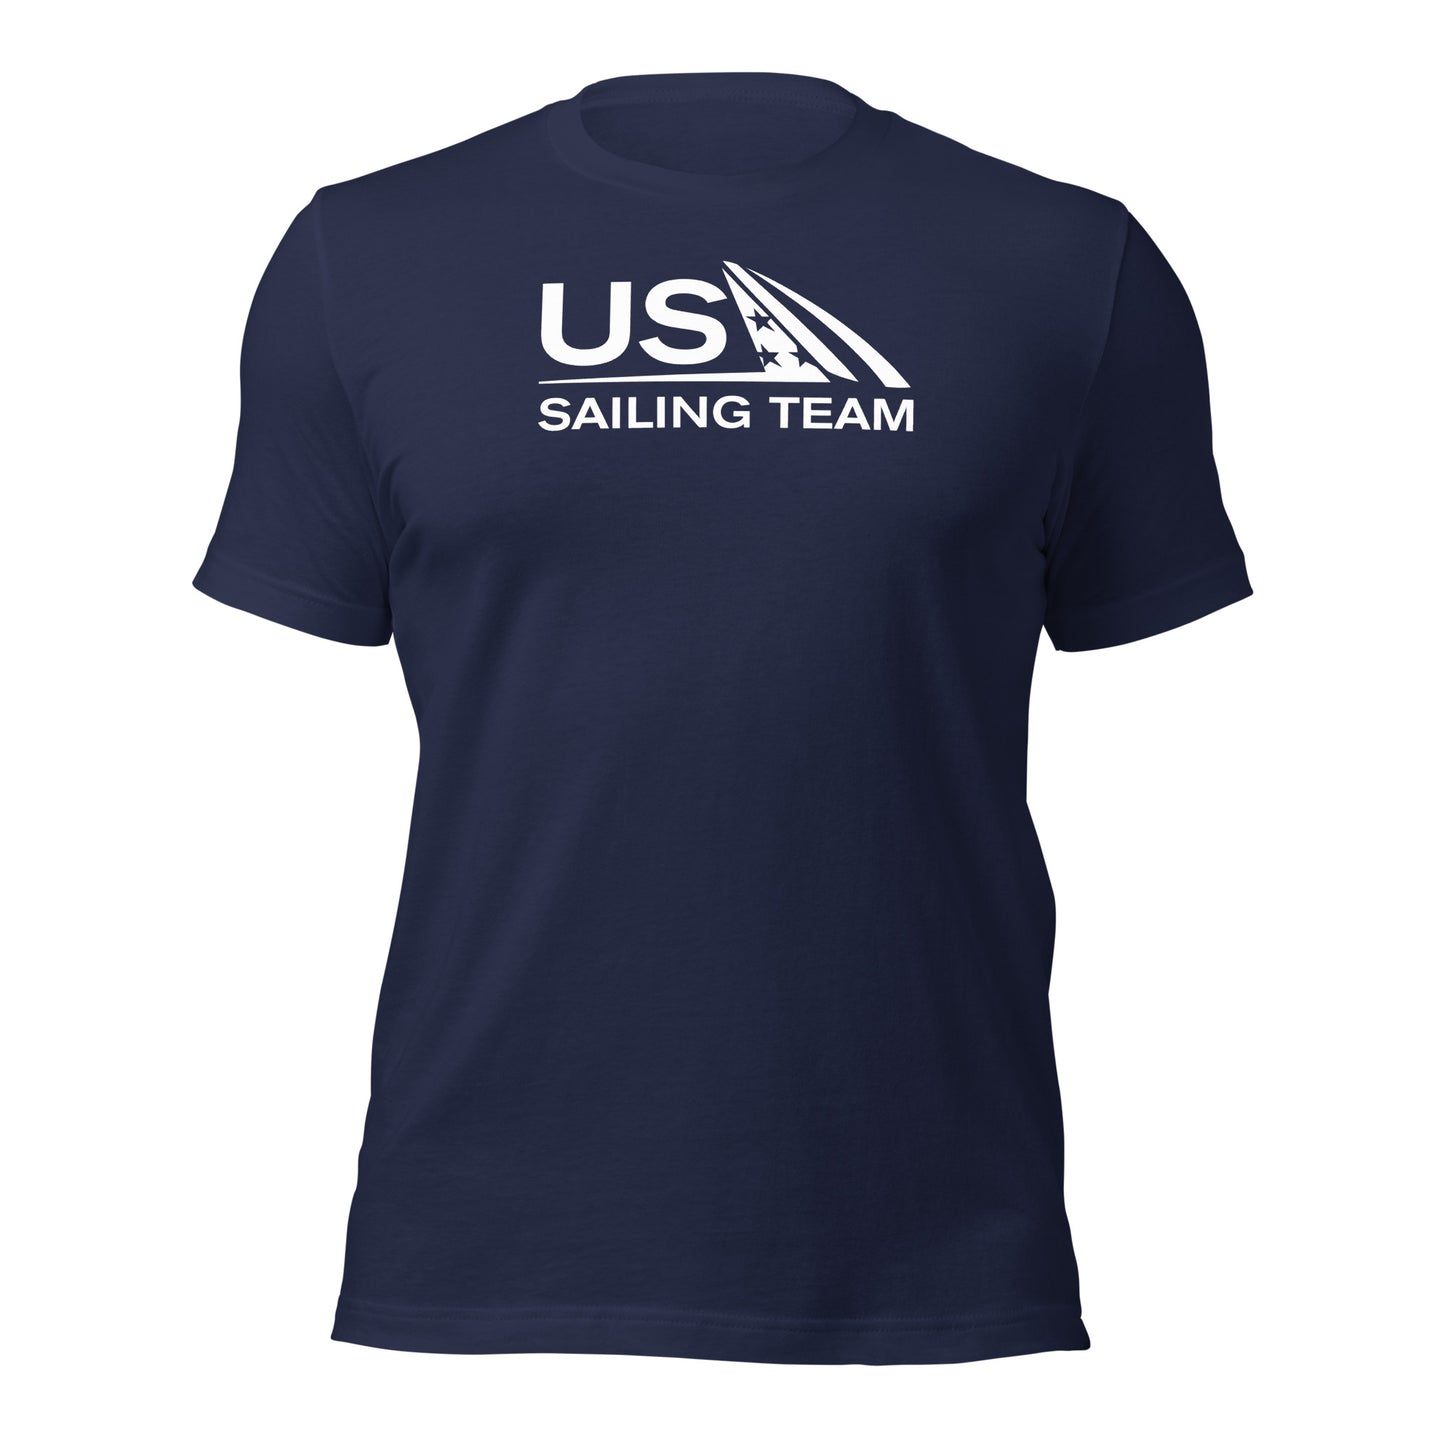 Unisex Tee (US Sailing Team)